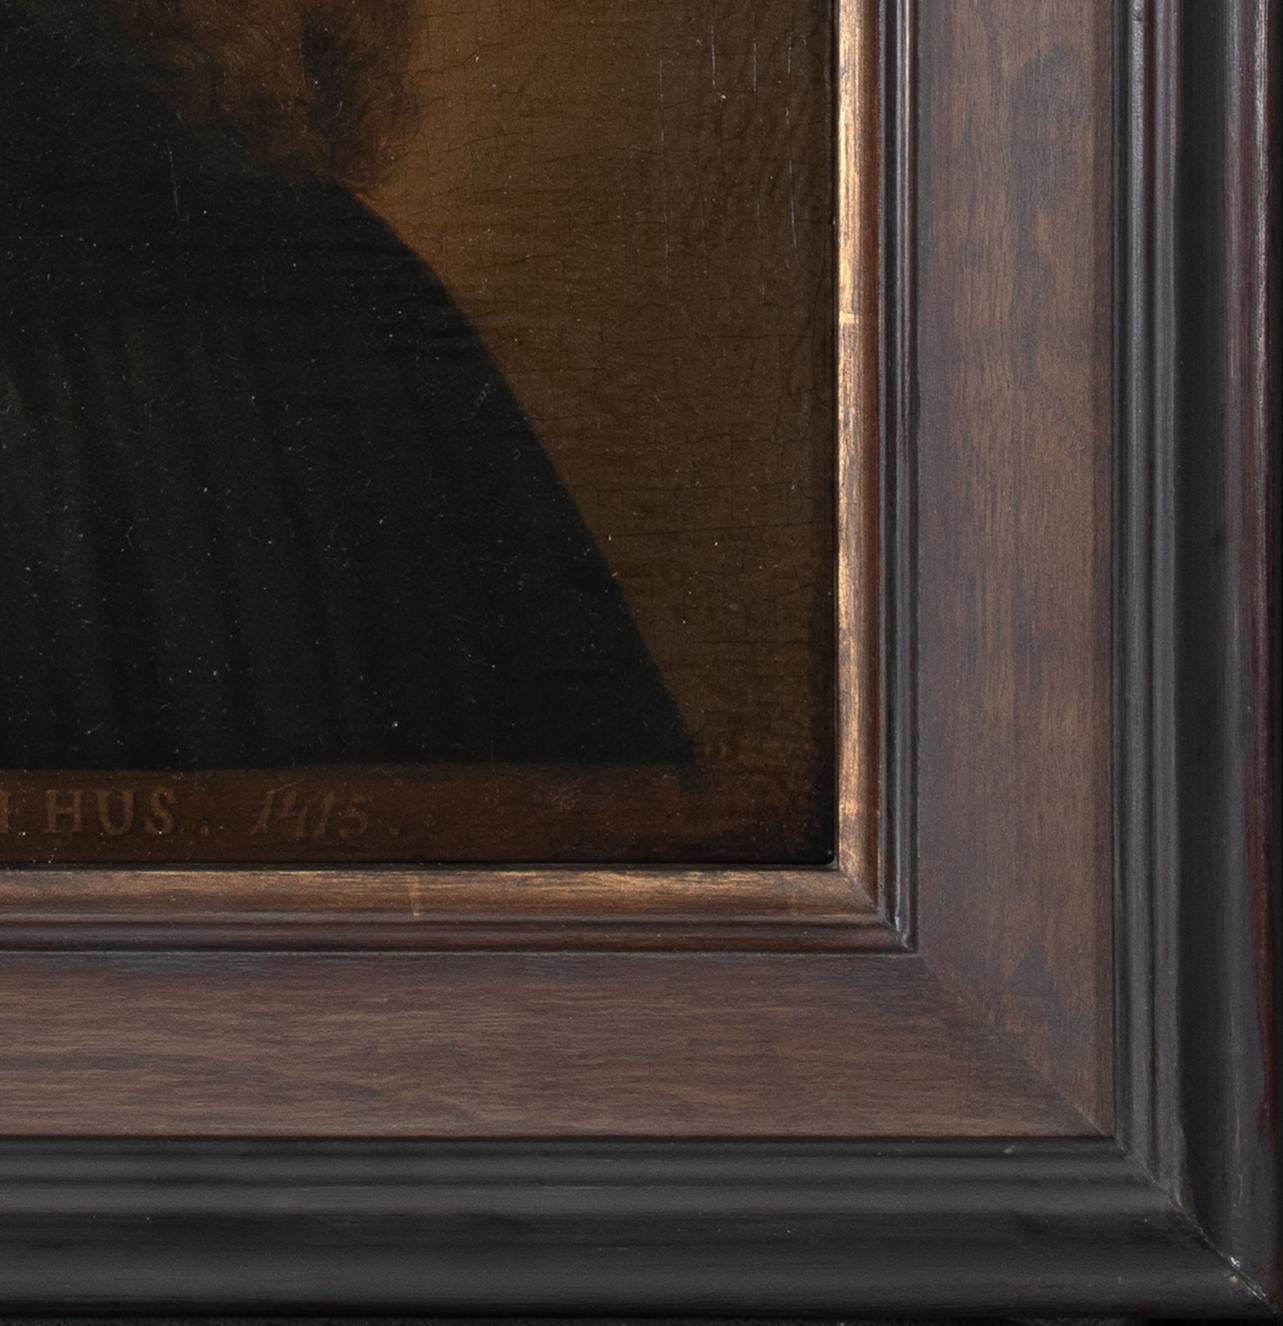 Portrait du théologien tchécoslovaque Jan Hus (1370-1415), 17e siècle

École européenne 

Portrait du théologien tchèque Jan Hus de l'école européenne du 17e siècle, huile sur panneau. Excellente qualité et condition rare portrait précoce